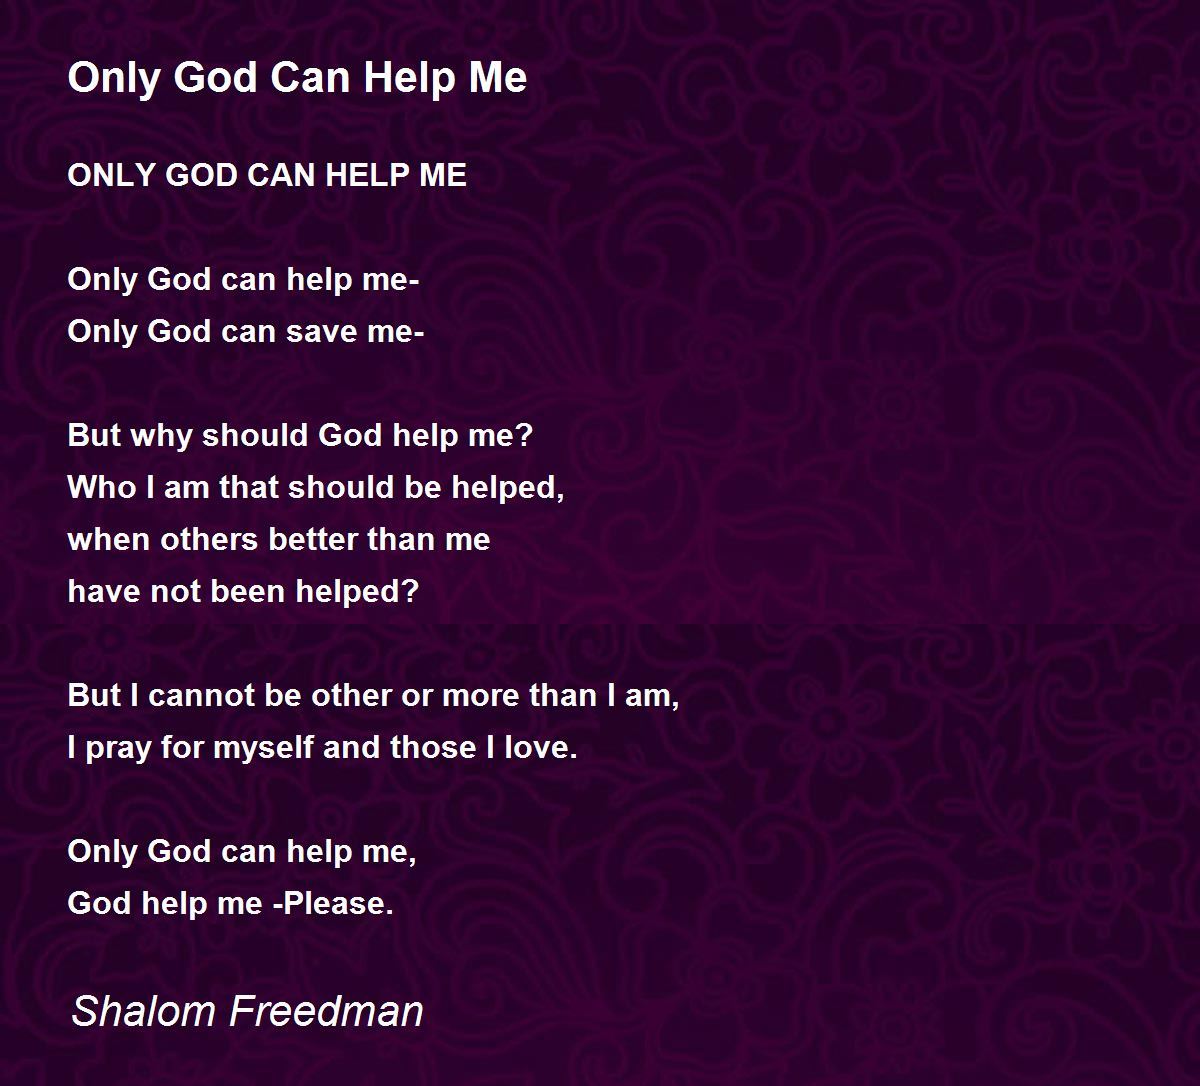 Only God Can Help Me - Only God Can Help Me Poem by Shalom Freedman